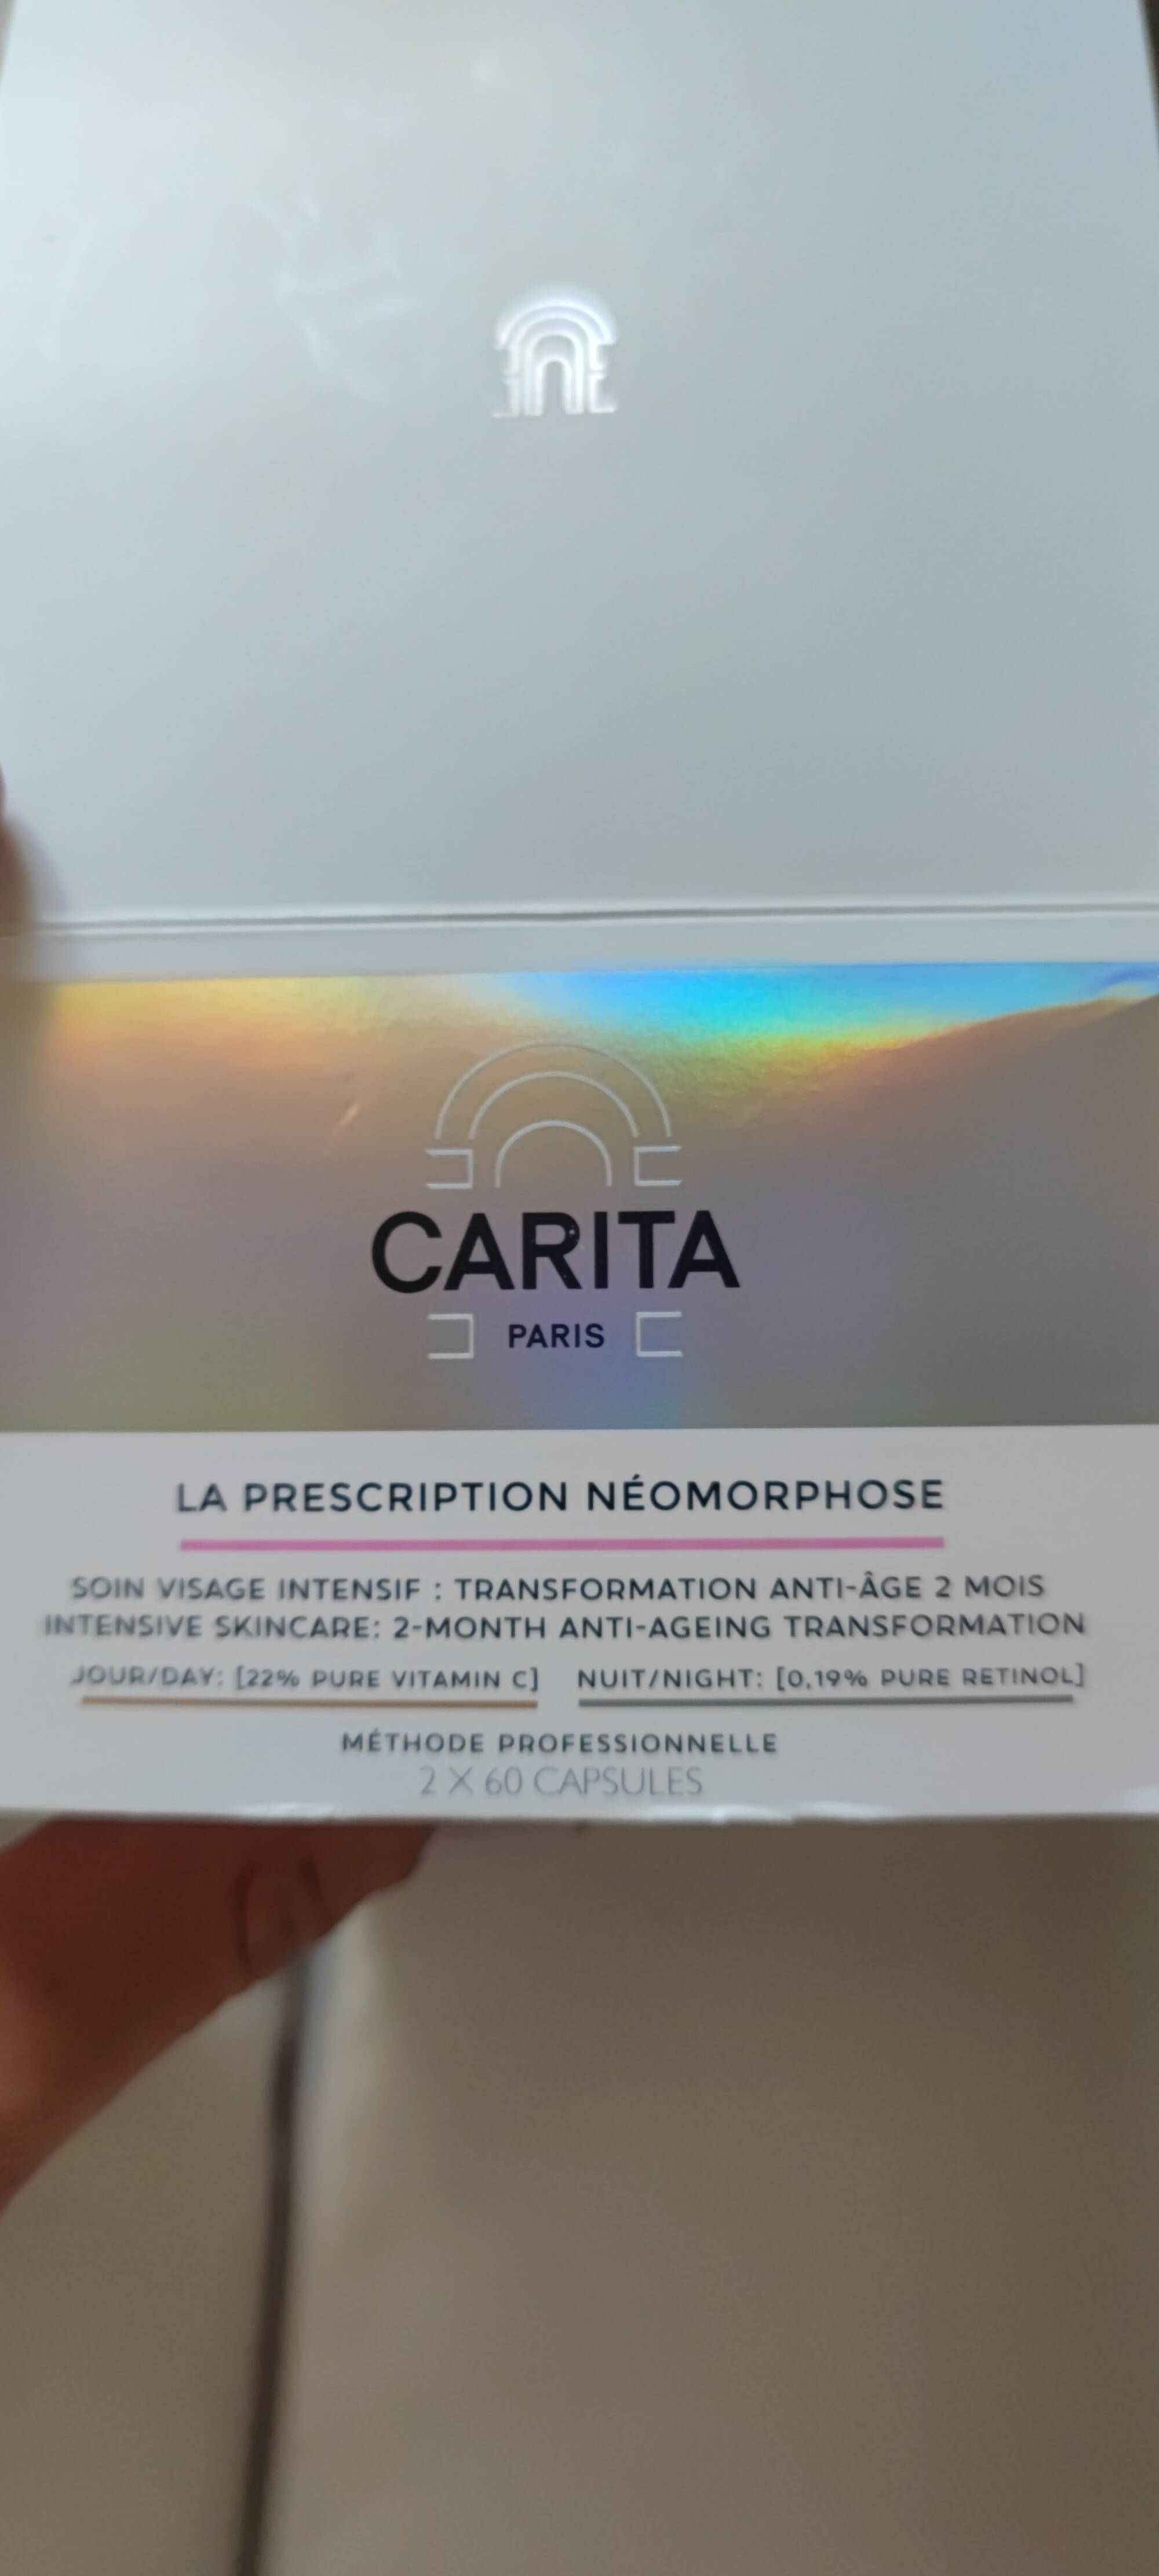 CARITA - La prescription néomorphose - Soin visage intensif